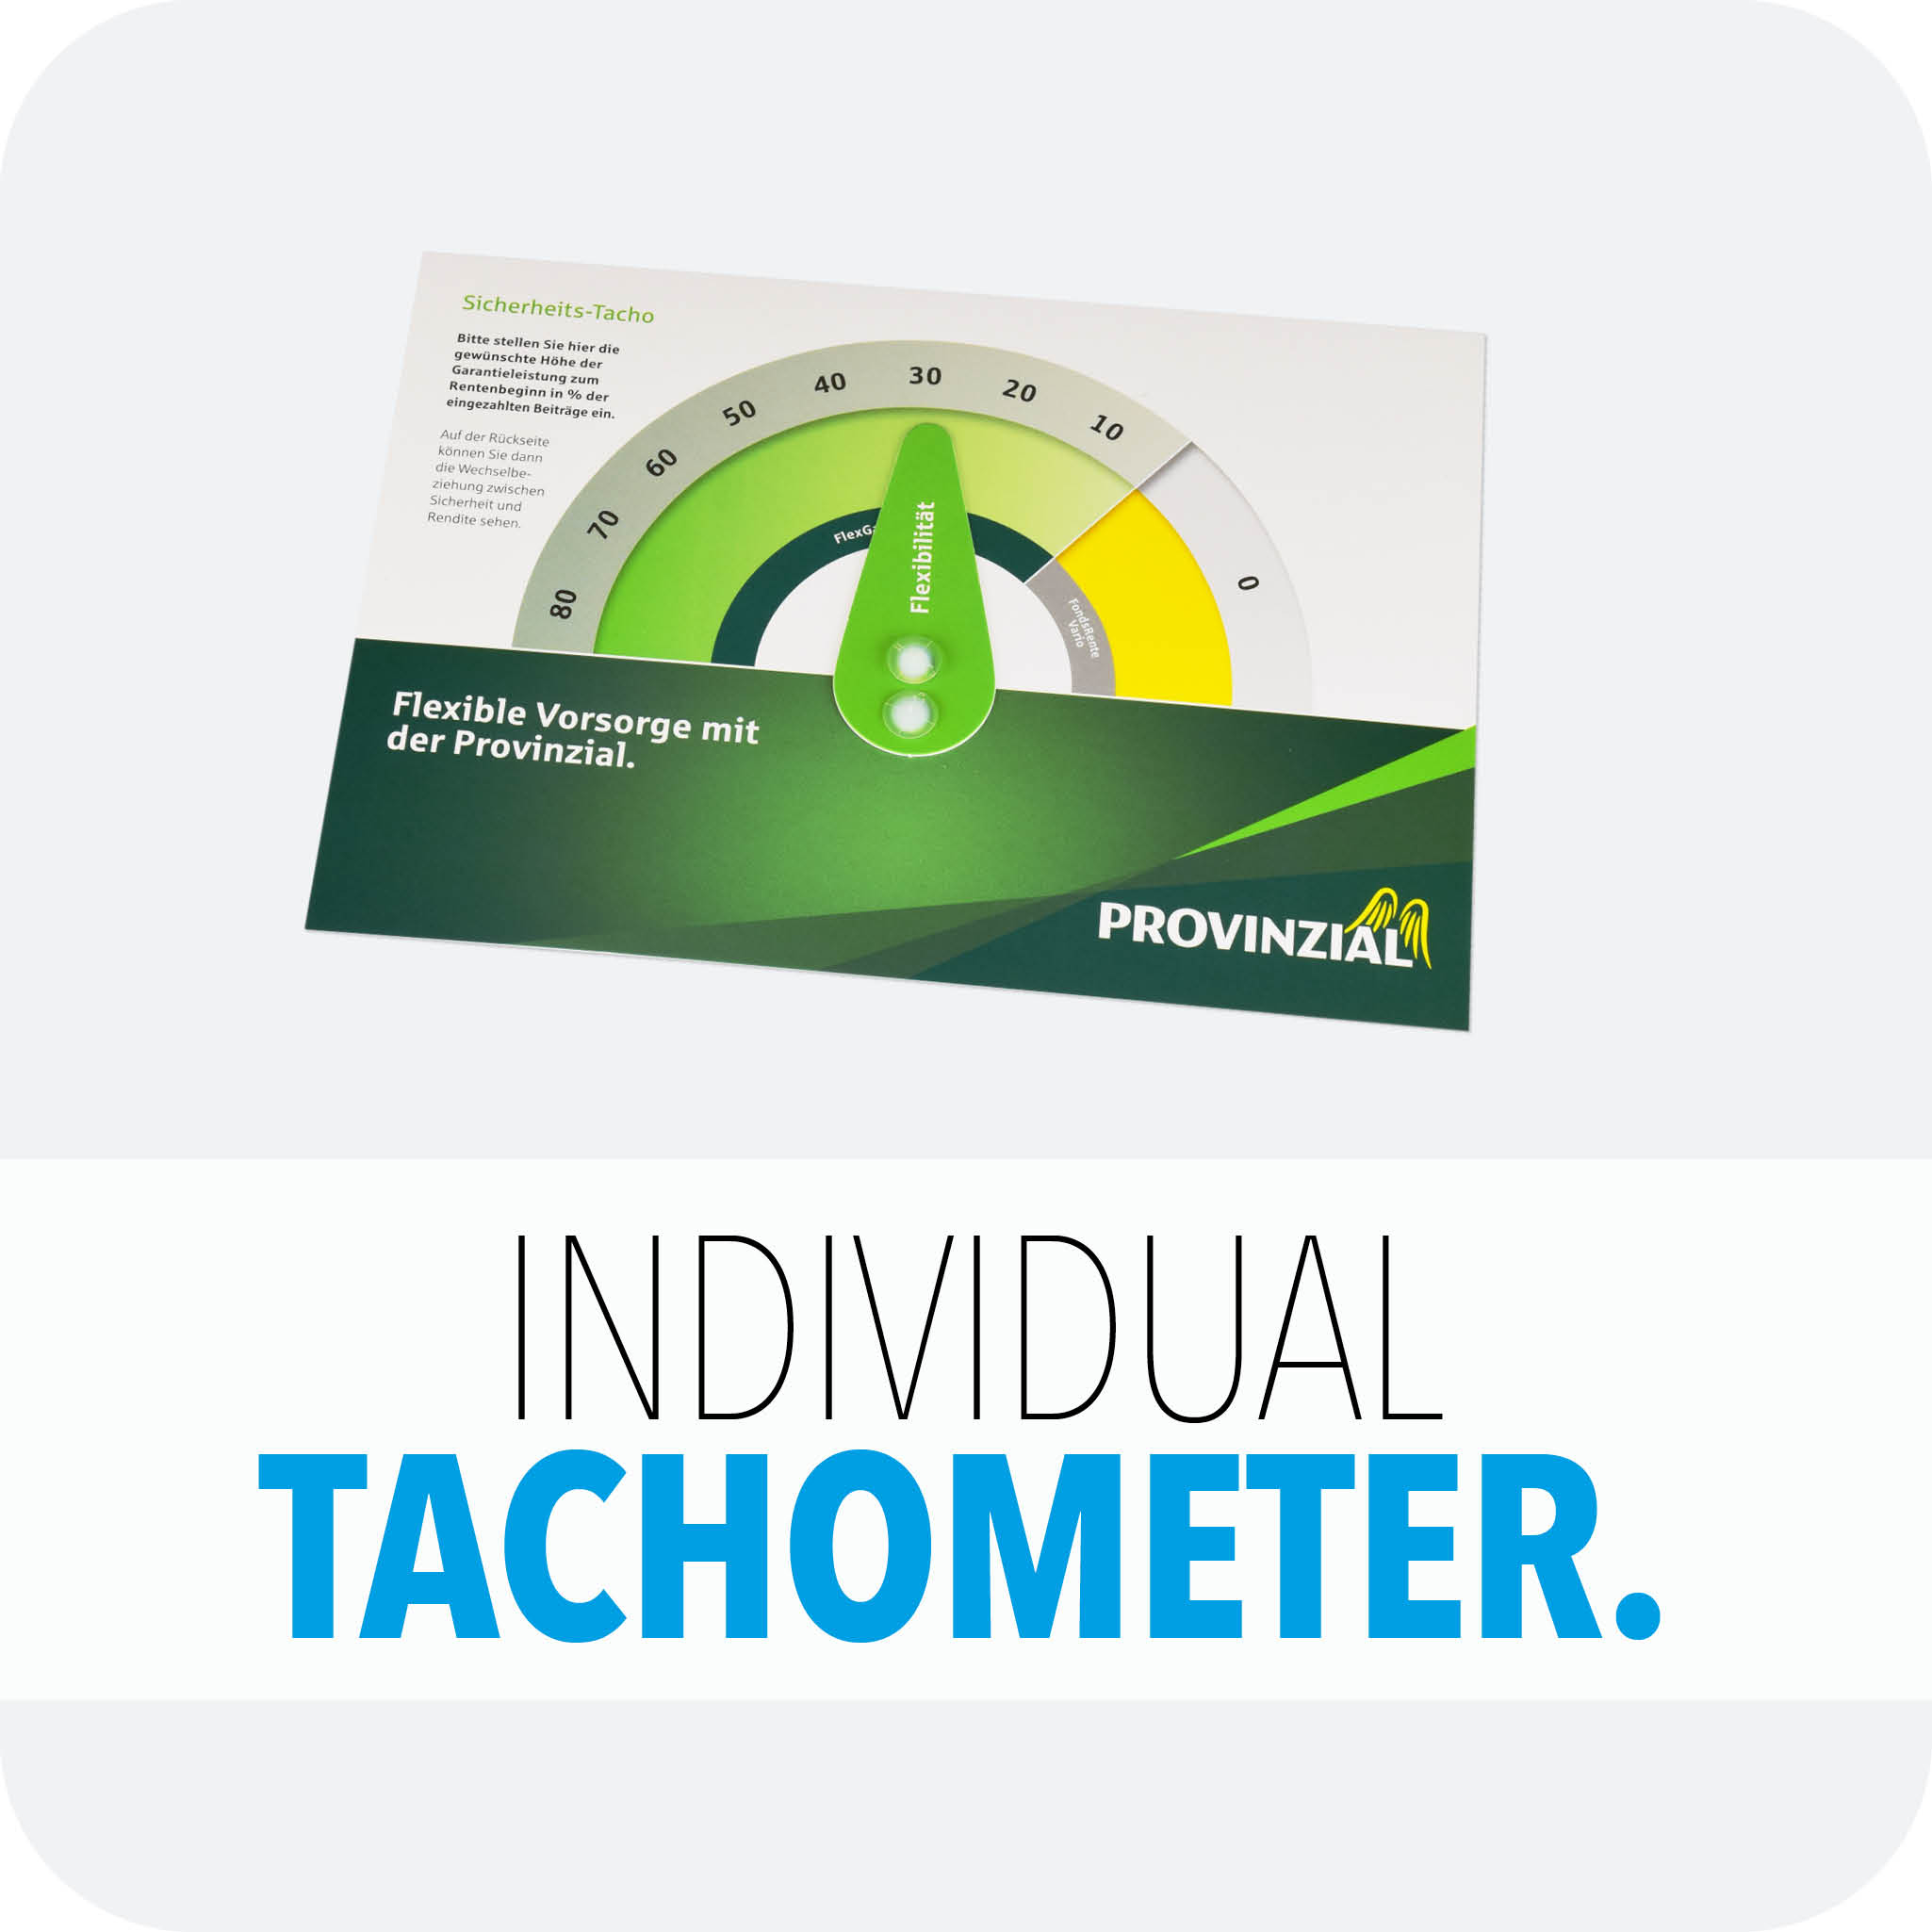 Individual Tachometer